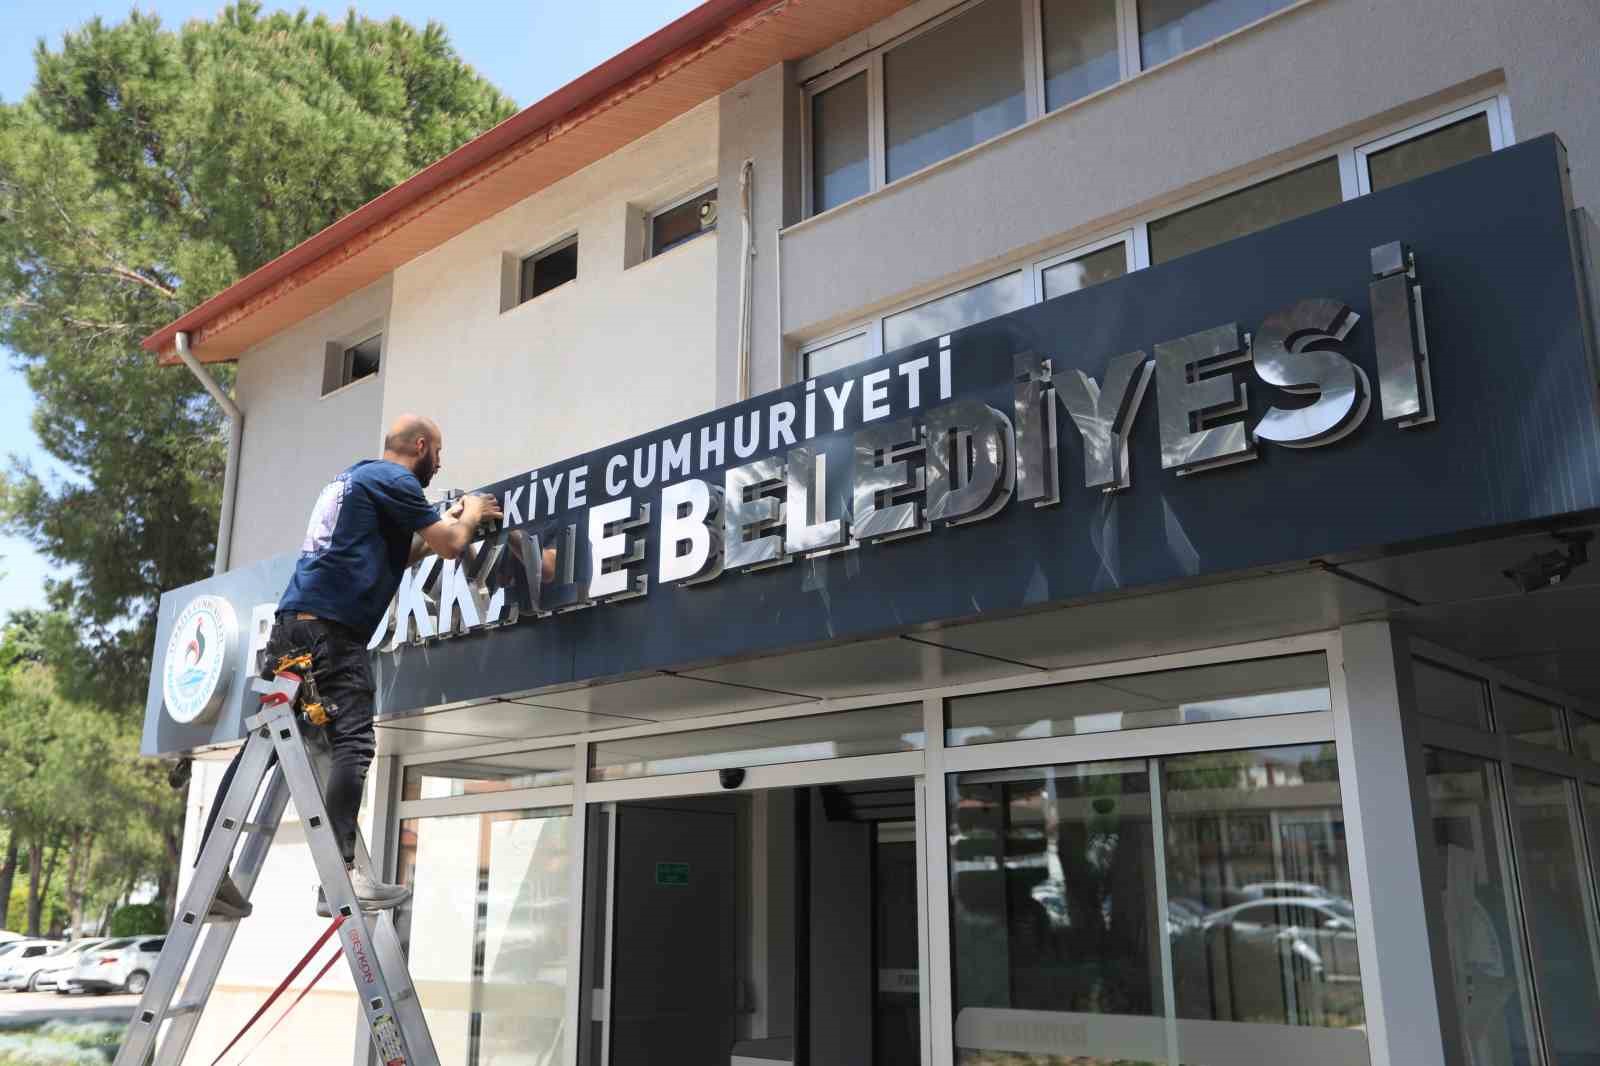 Pamukkale Belediyesi tabelasına Türkiye Cumhuriyeti ibaresi eklendi
